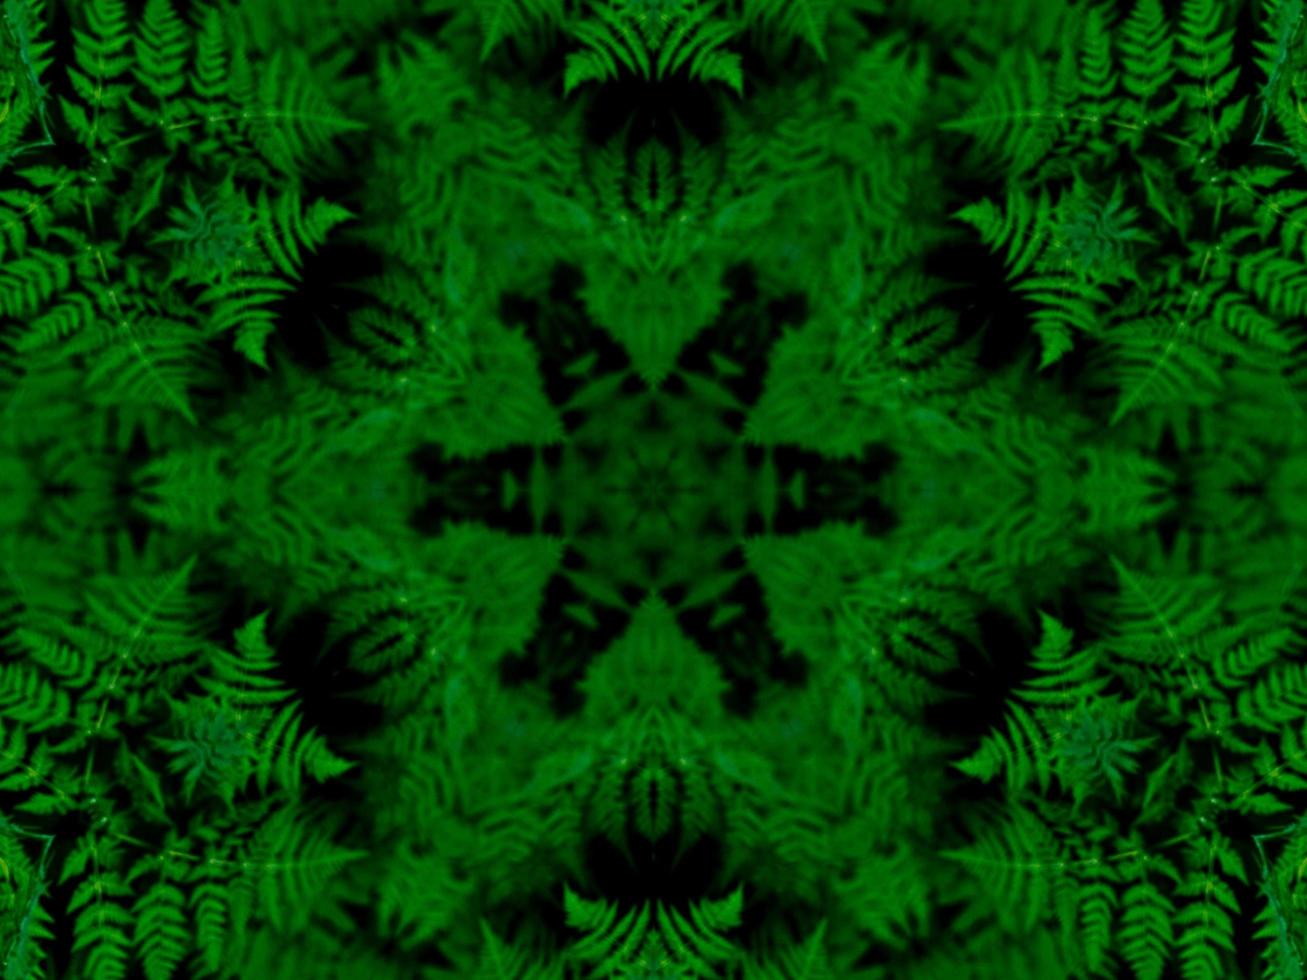 reflejo de hojas de fondo abstracto. patrón de caleidoscopio verde. foto gratis.